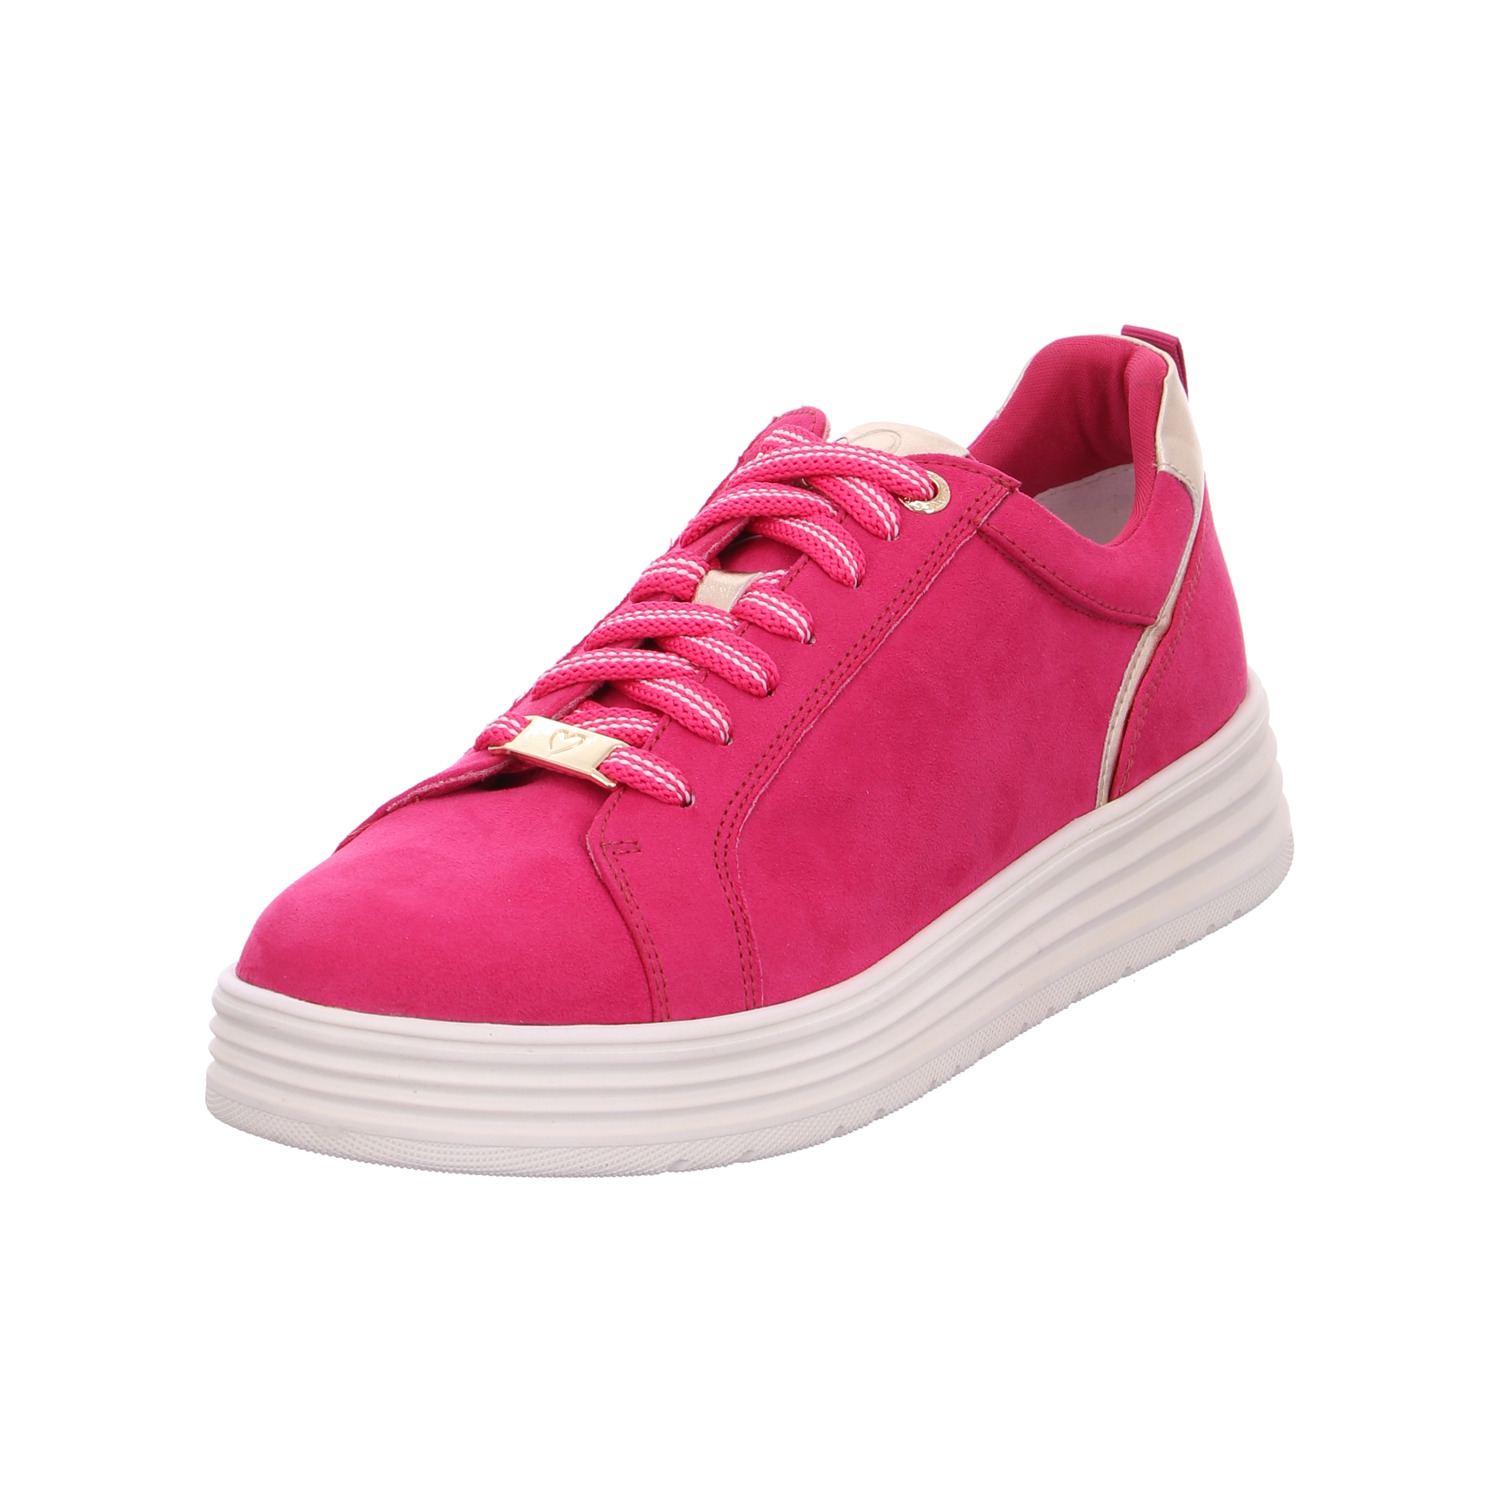 marco-tozzi-sneaker-rosa-124492-1